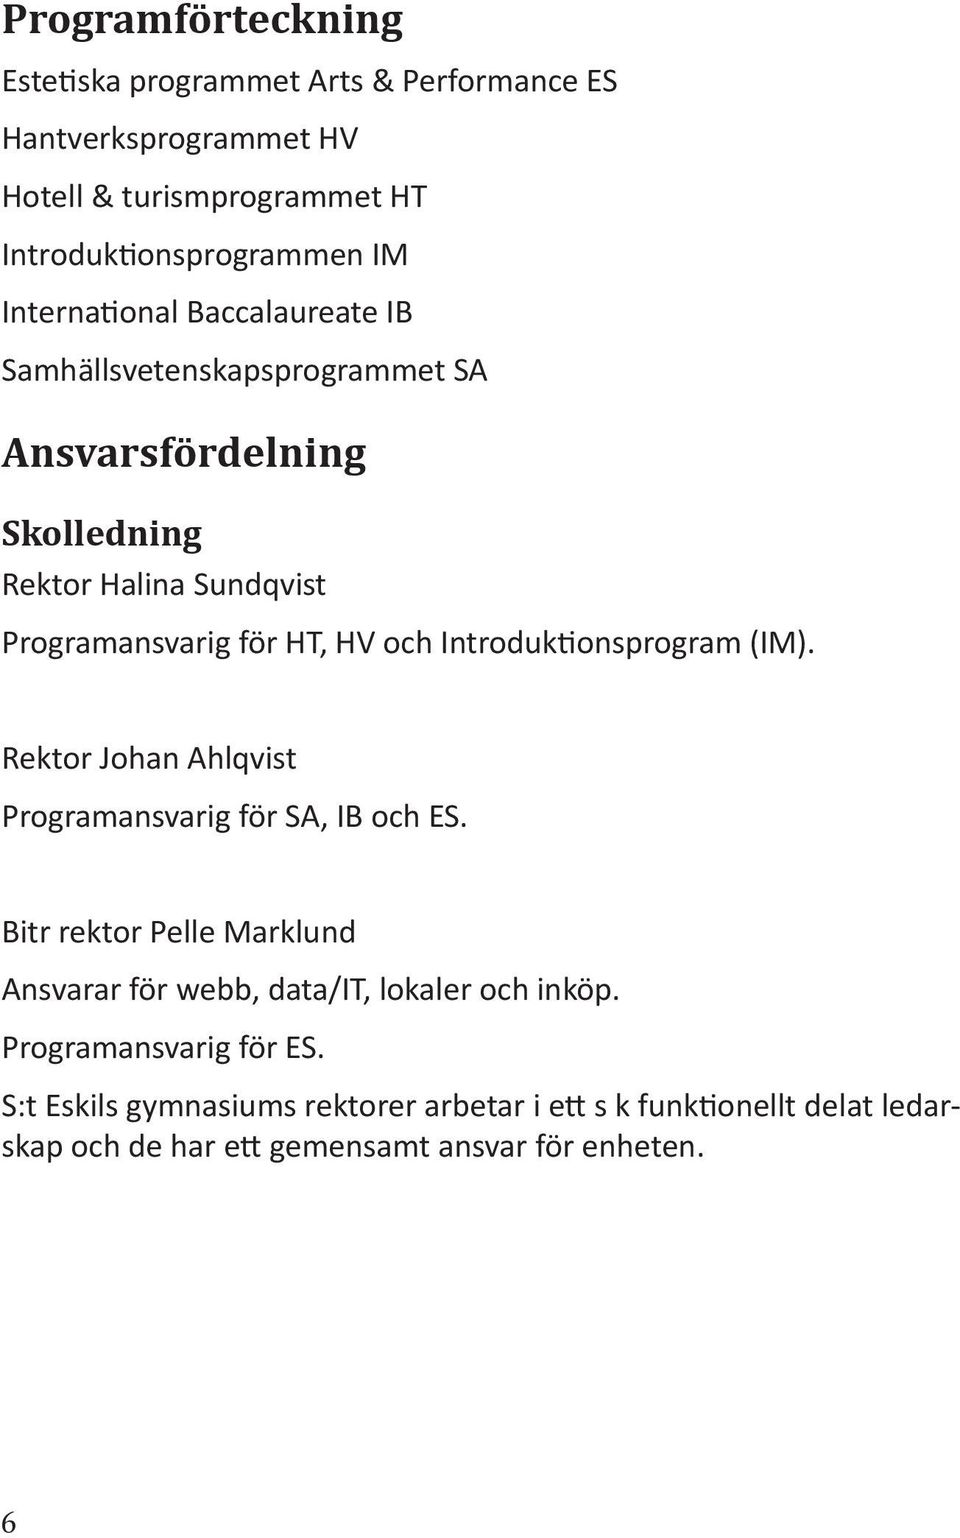 Introduk onsprogram (IM). Rektor Johan Ahlqvist Programansvarig för SA, IB och ES.